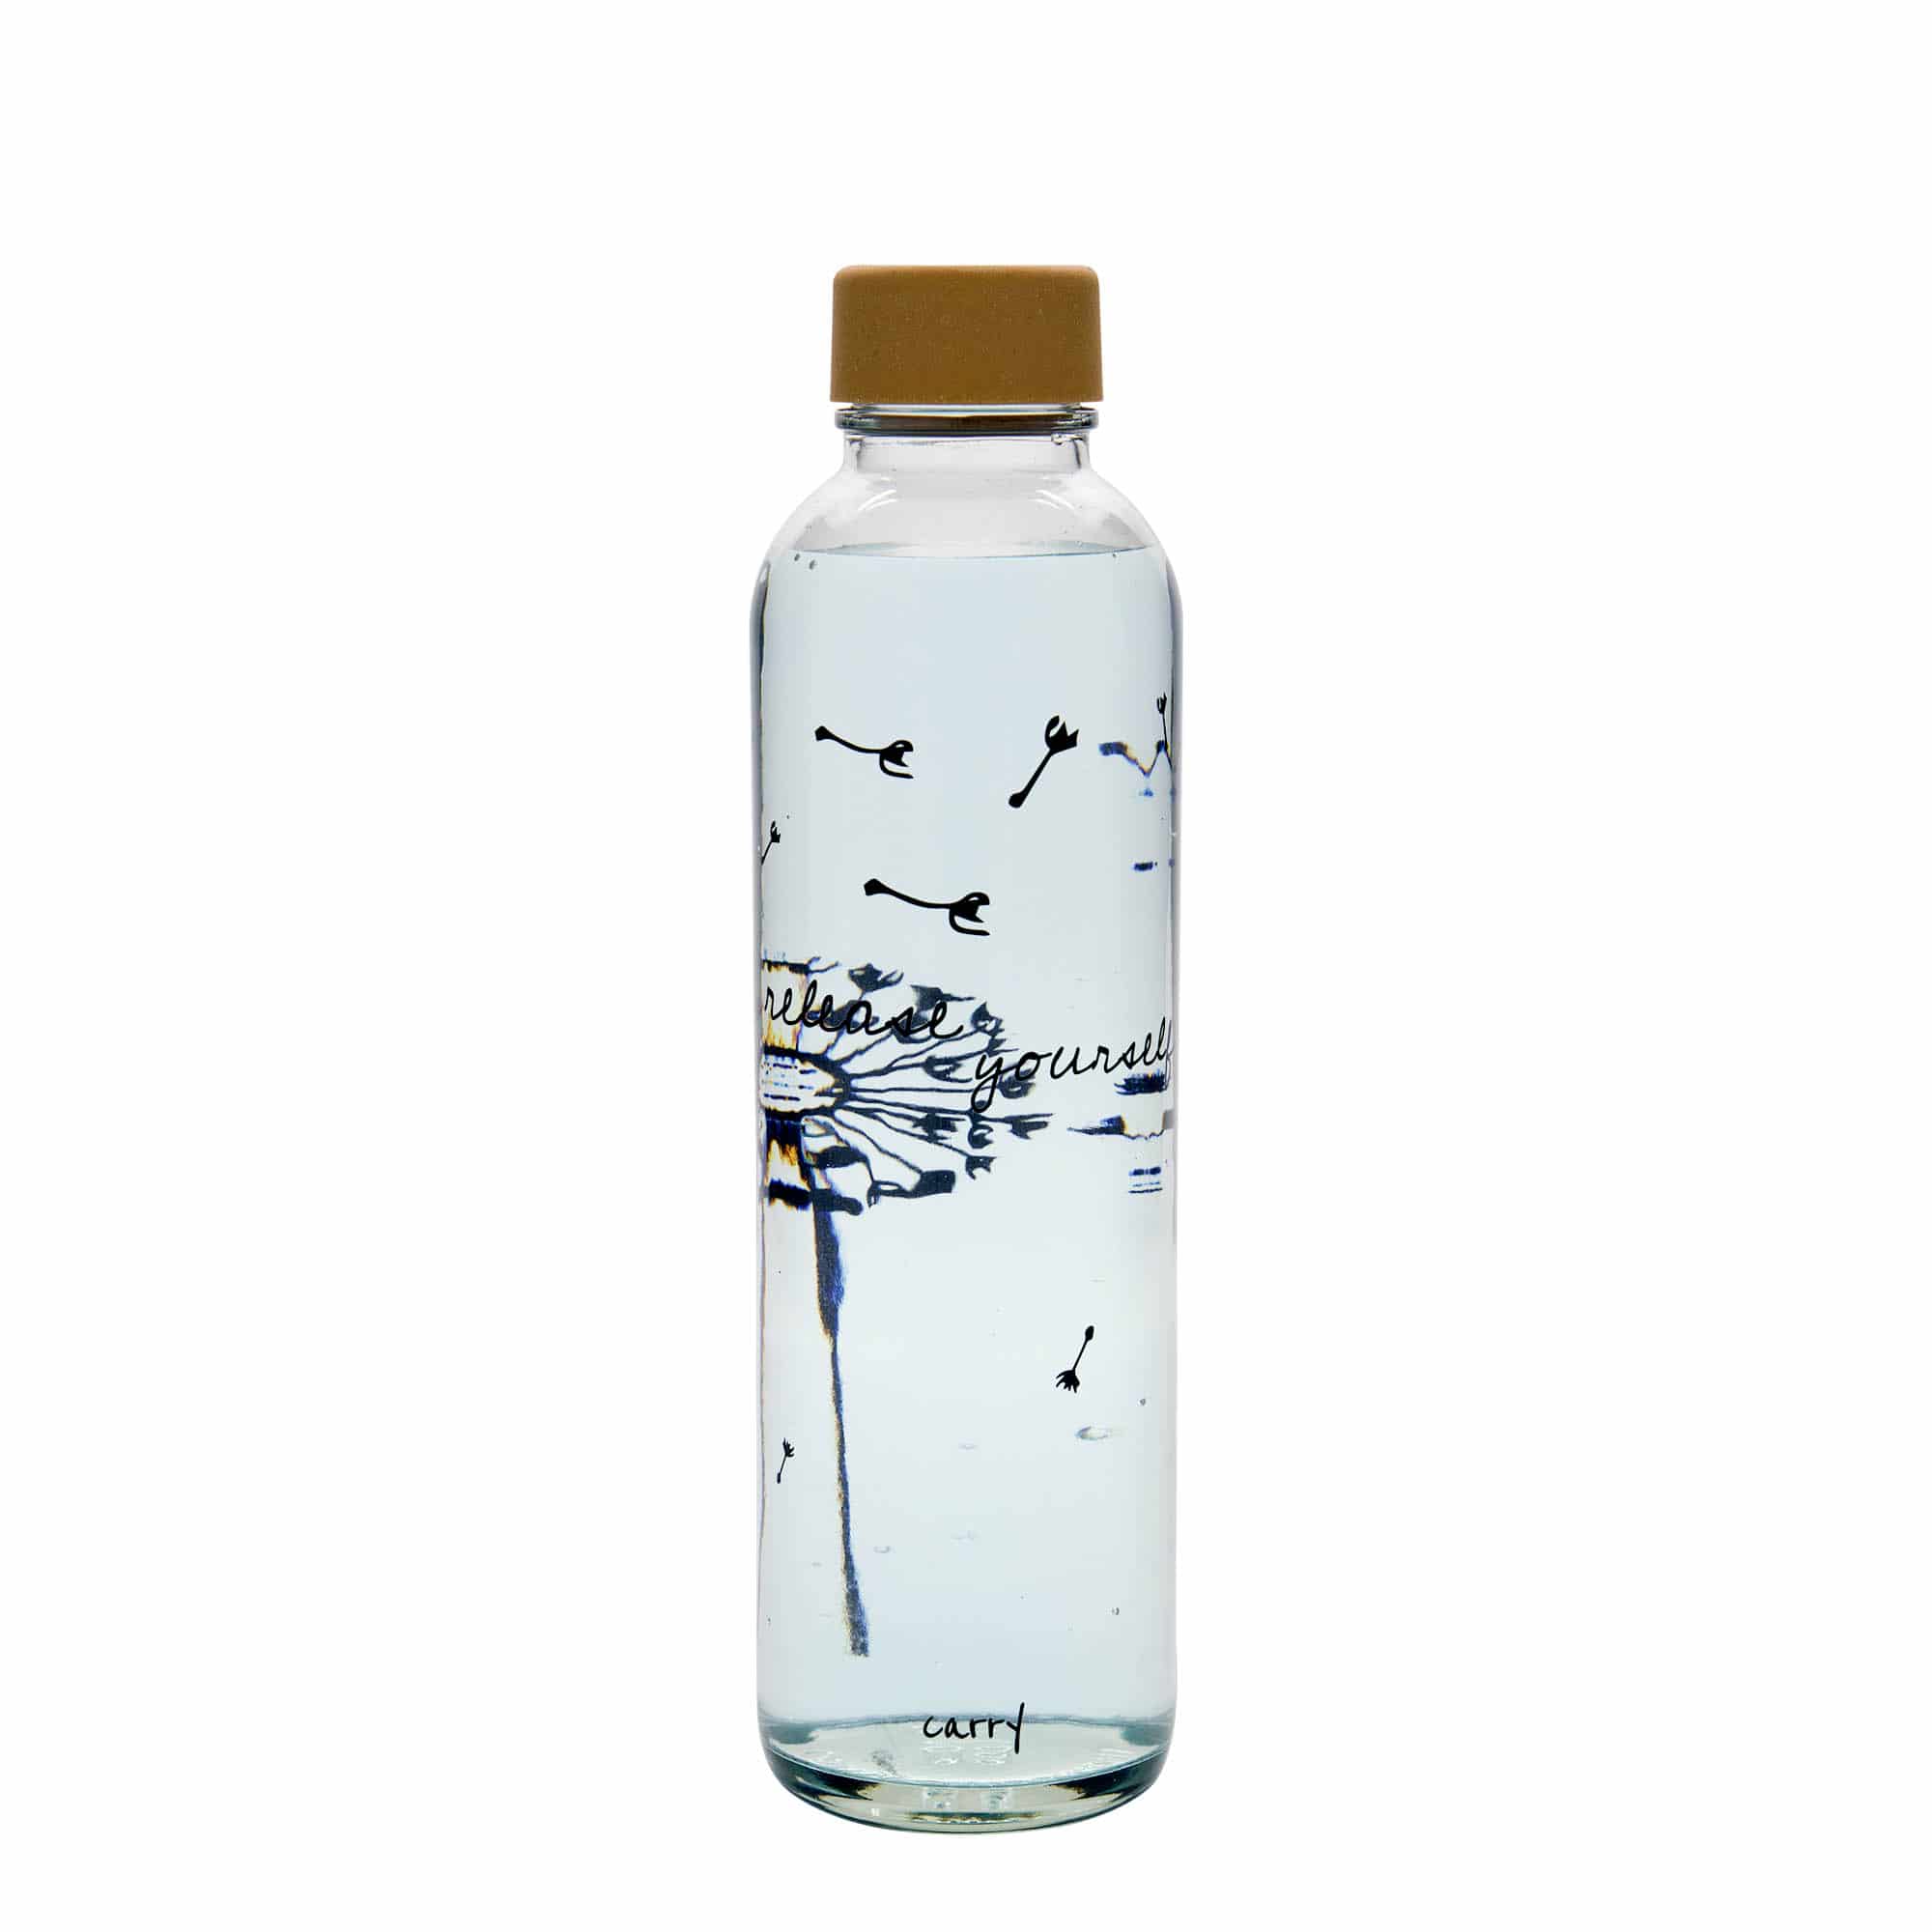 700 ml-es ivópalack CARRY Bottle, motívum: Release Yourself, szájnyílás: csavaros kupak